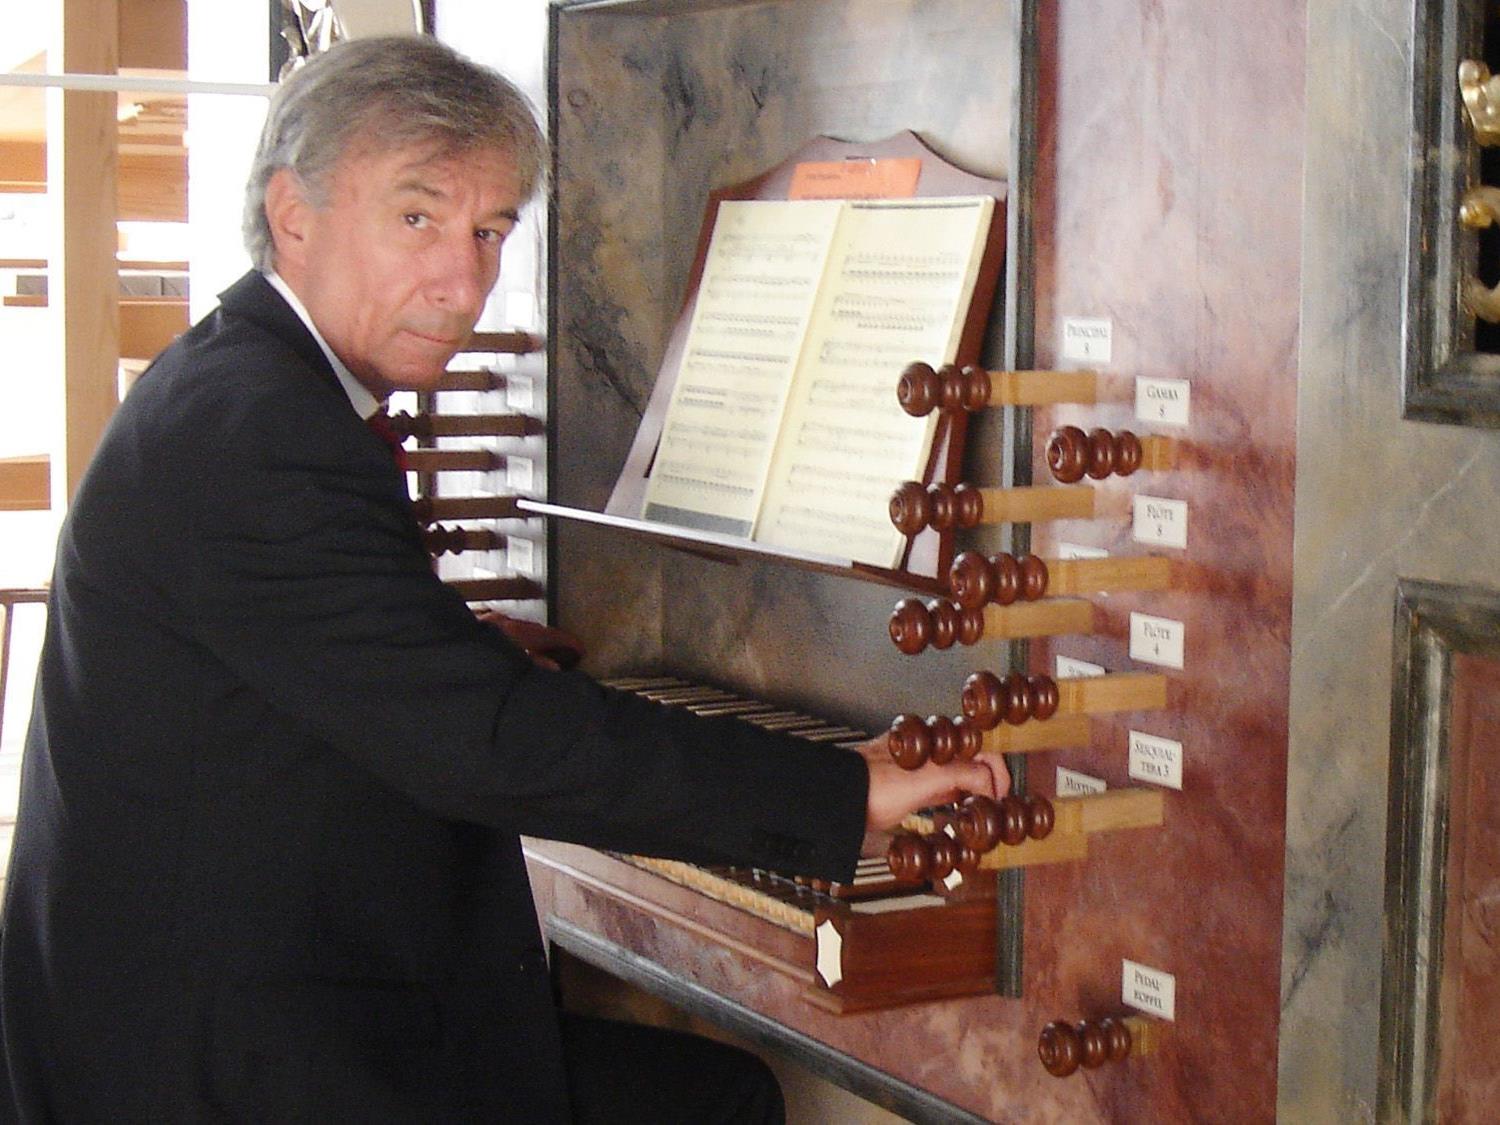 Prof. Bruno Oberhammer spielt am Montag, den 12. November, um 20:15 Uhr in der Pfarrkirche Höchst